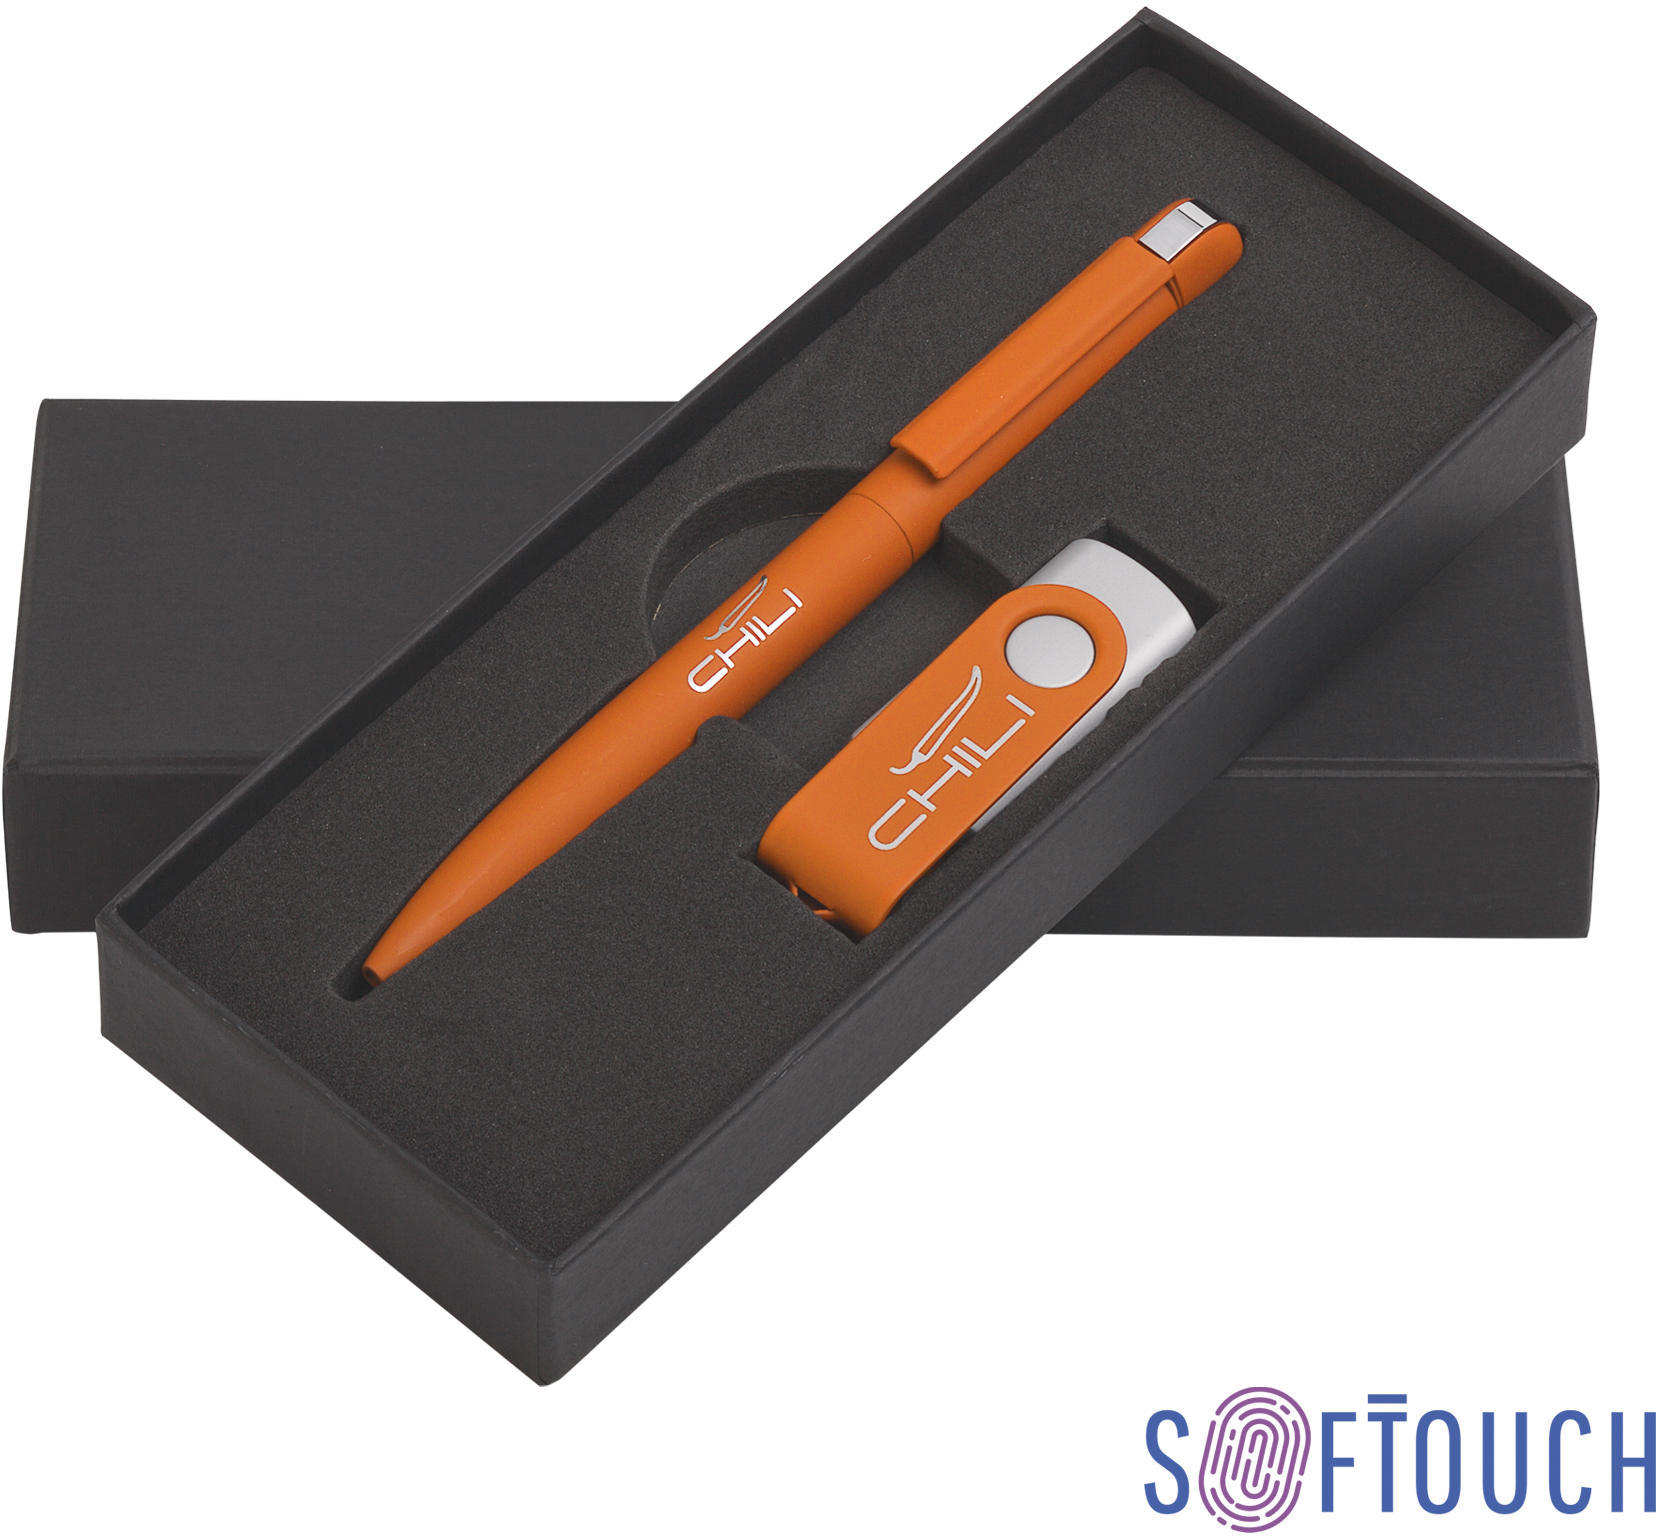 Артикул: E6877-10S/16Gb — Набор ручка + флеш-карта 16 Гб в футляре, покрытие soft touch